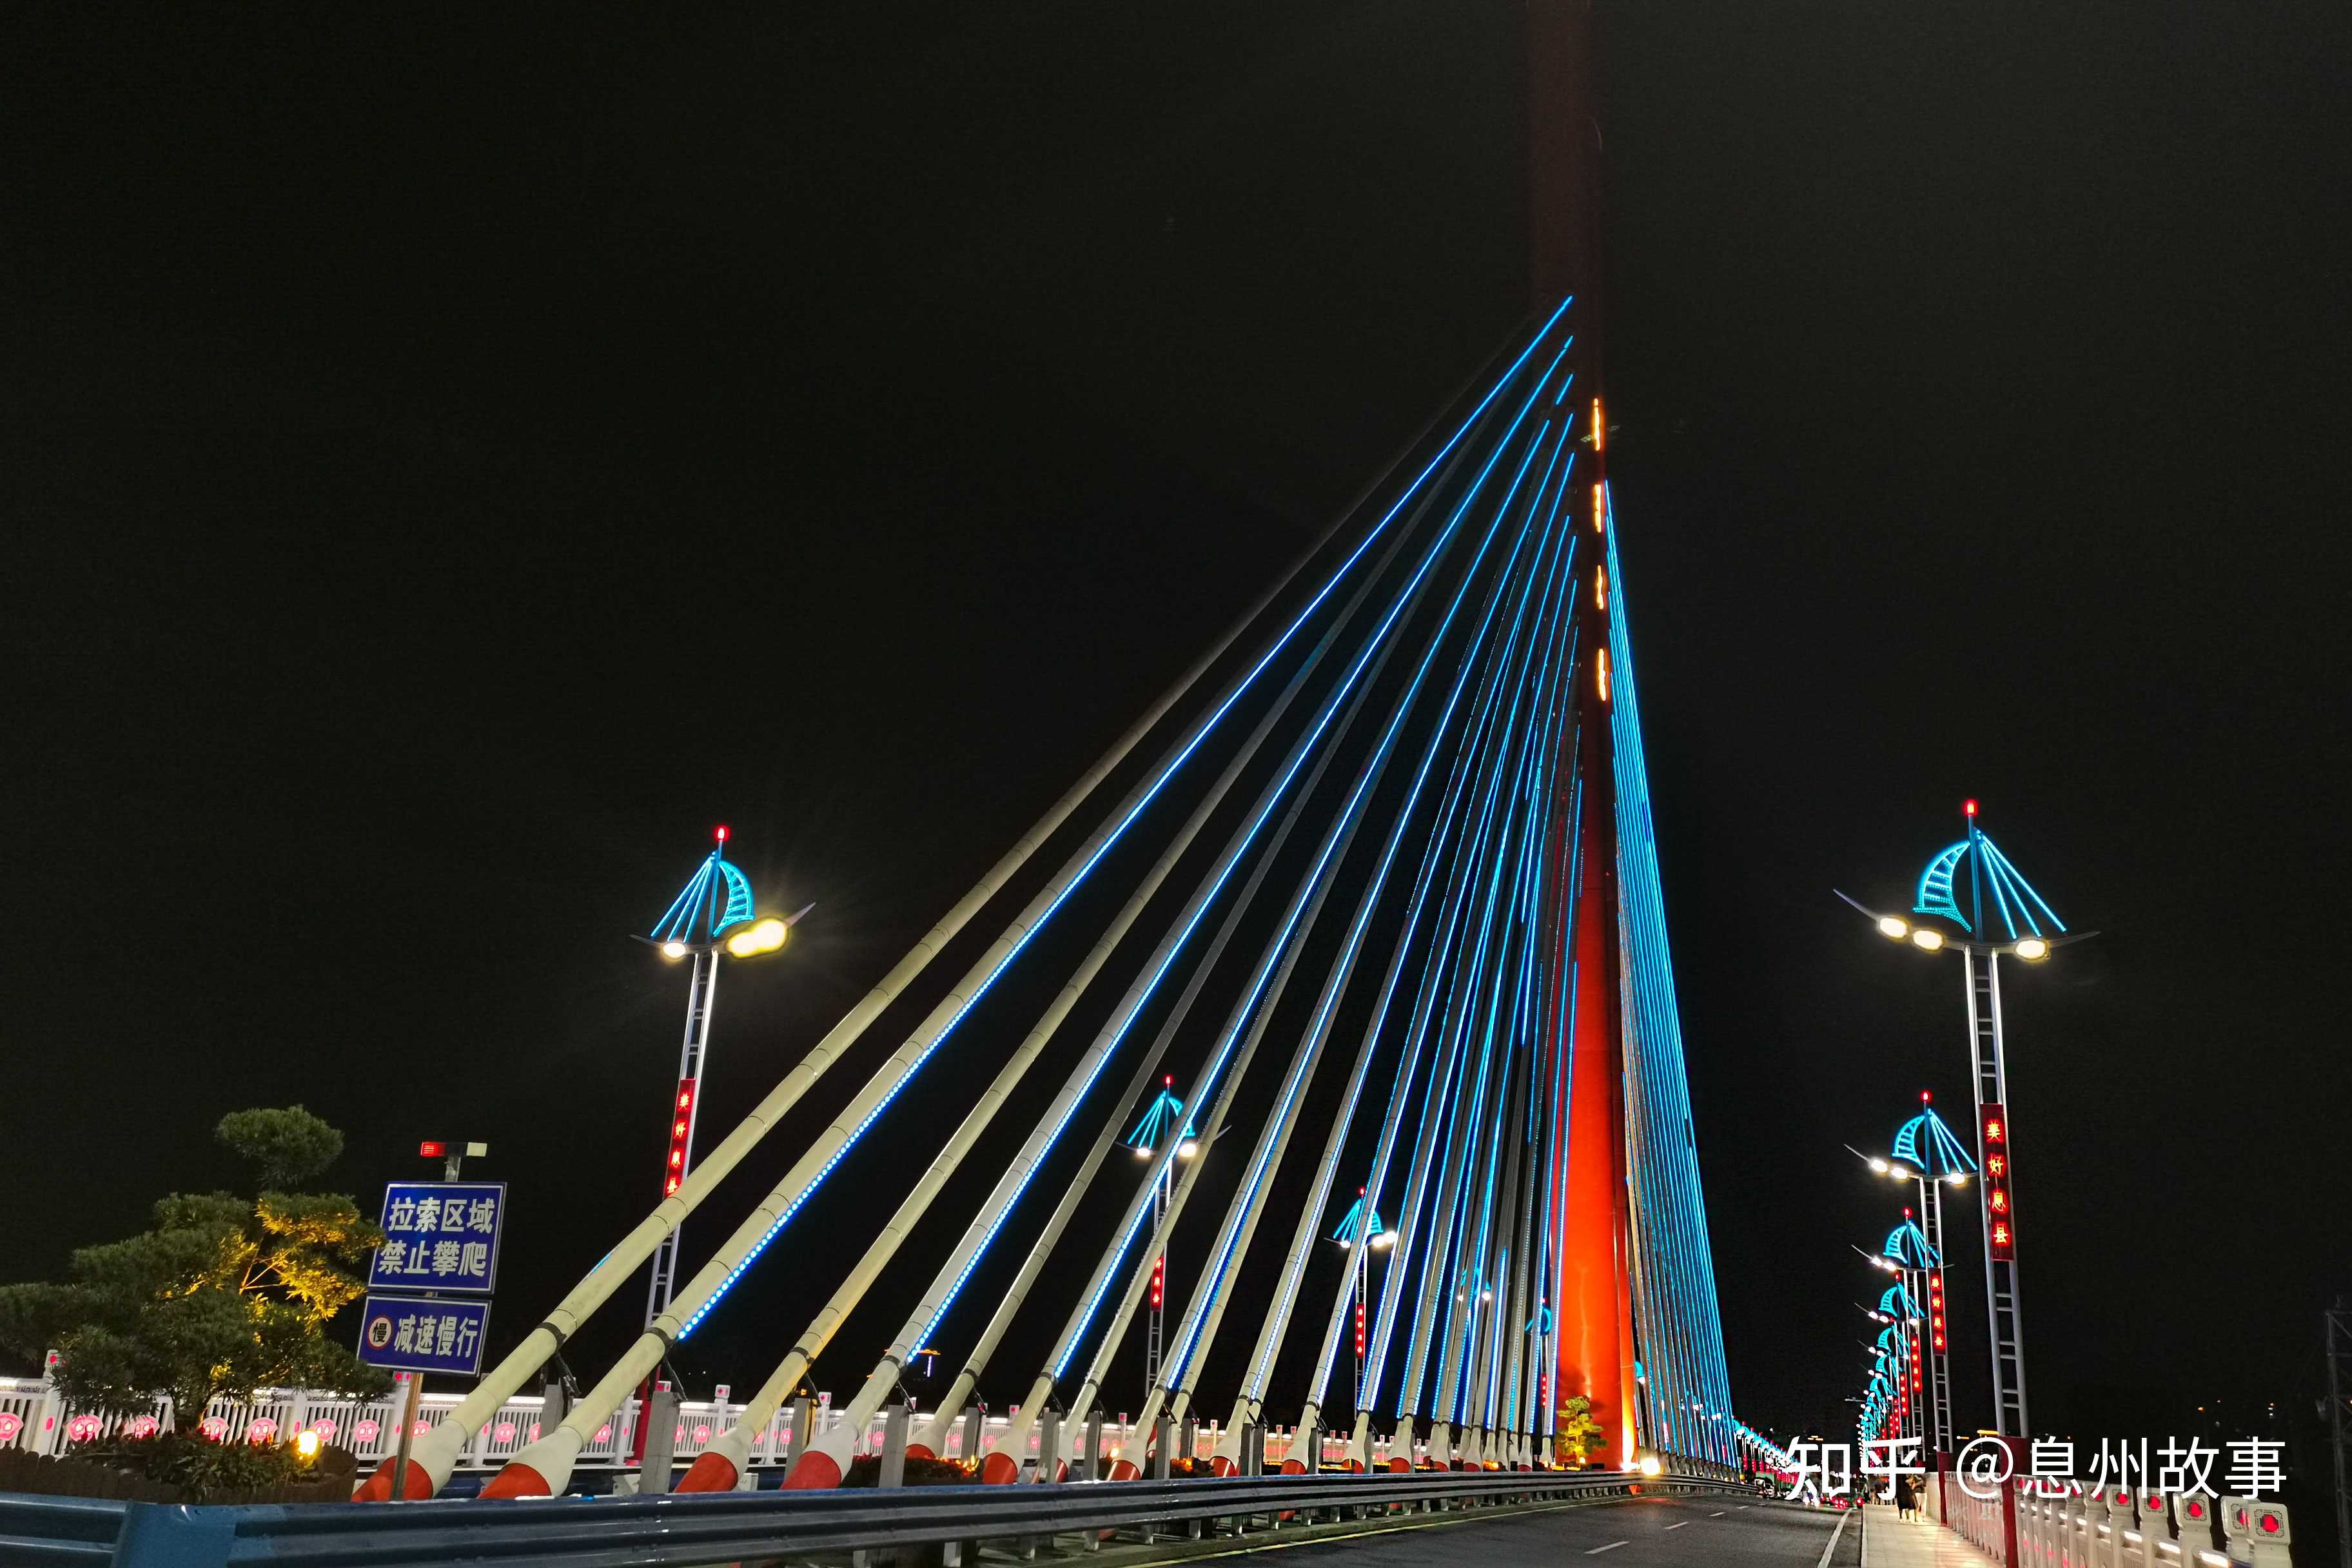 息州故事 的想法: 『 渡淮大桥 』 型似帆船,夜景璀璨